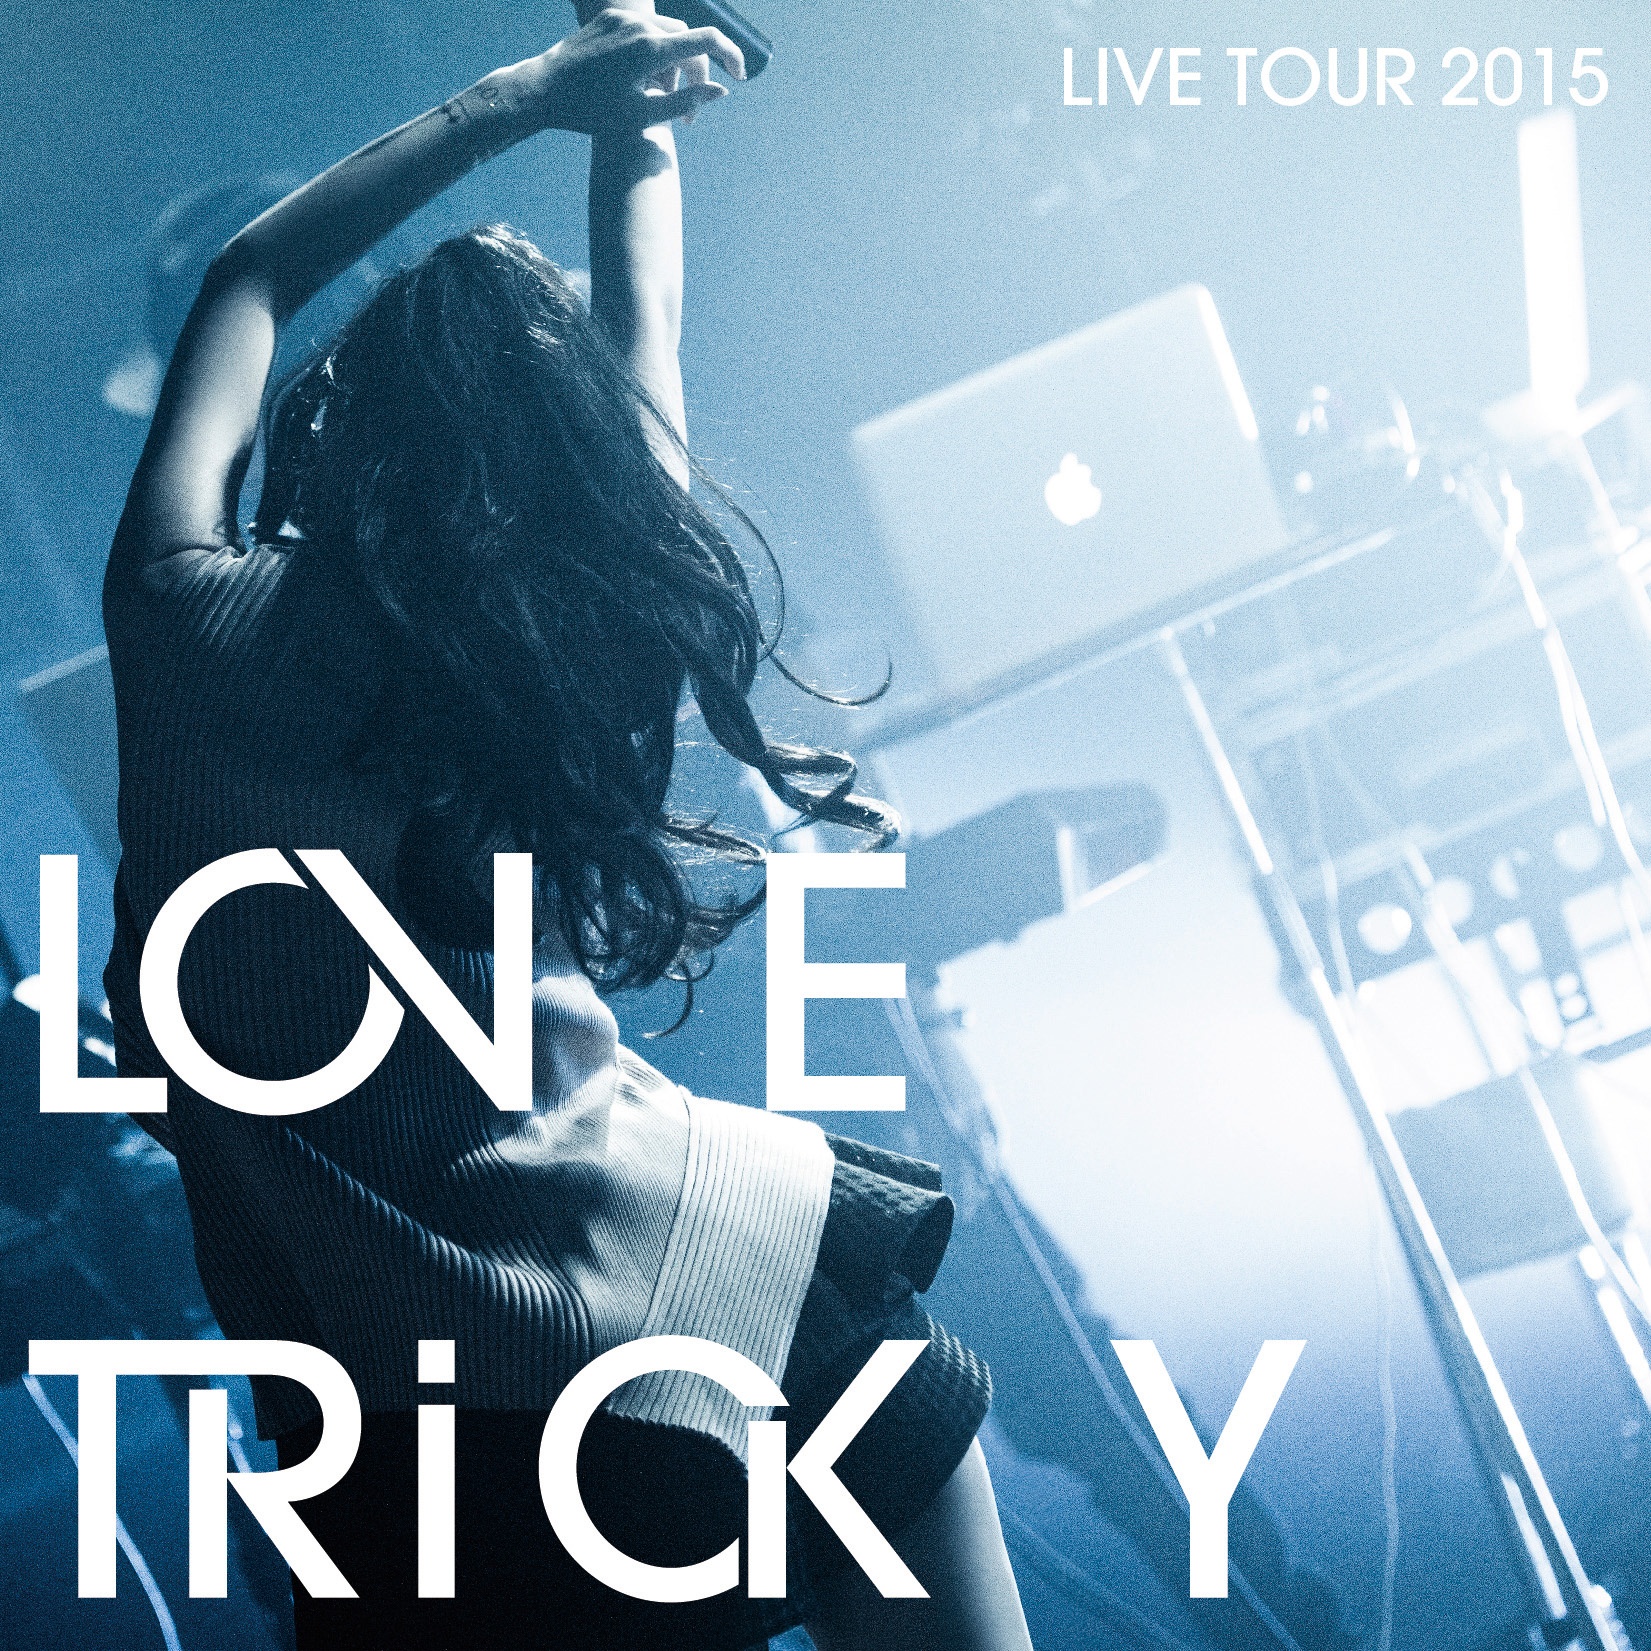 LOVE TRiCKY LIVE TOUR 2015 ti zhong jian